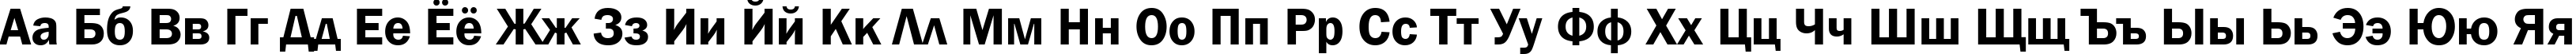 Пример написания русского алфавита шрифтом font152